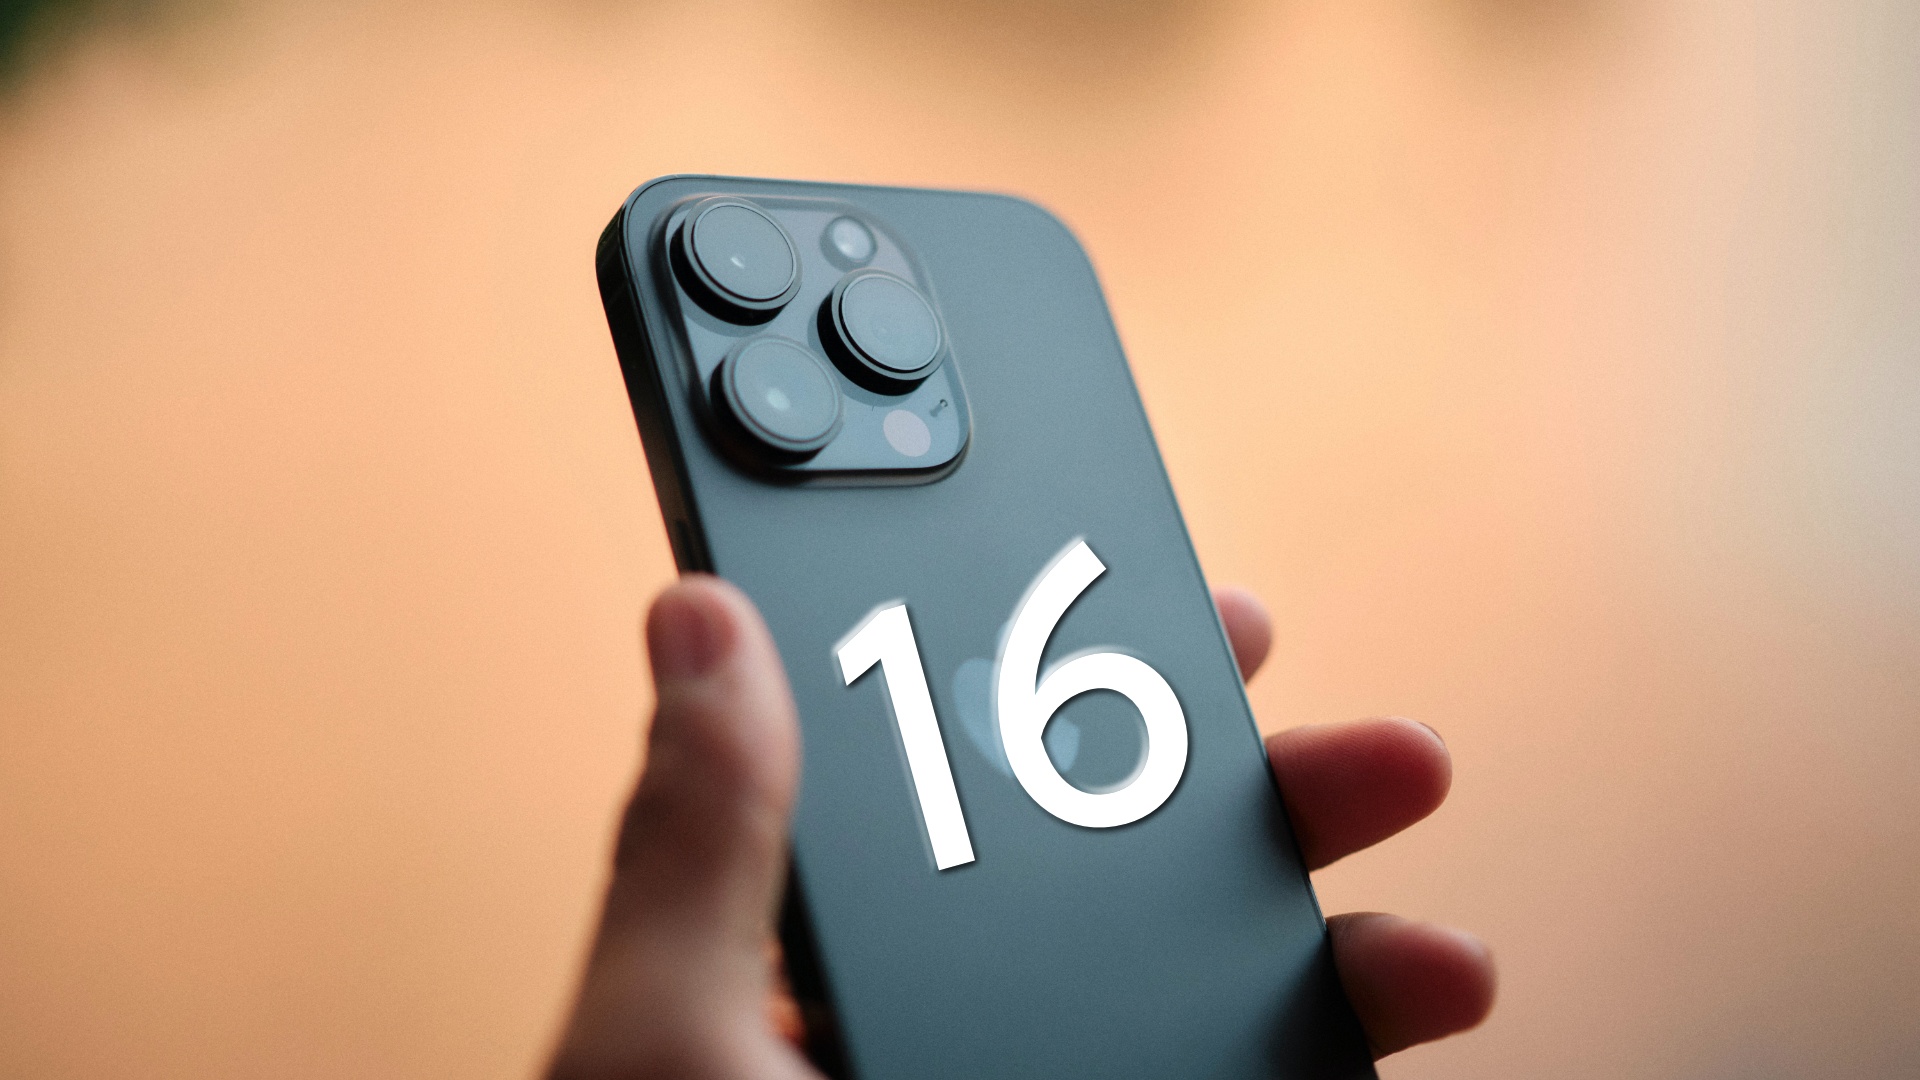 #iPhone 16 Pro: Apple will die Kamera nochmal verbessern und euch viel schneller Daten übertragen lassen